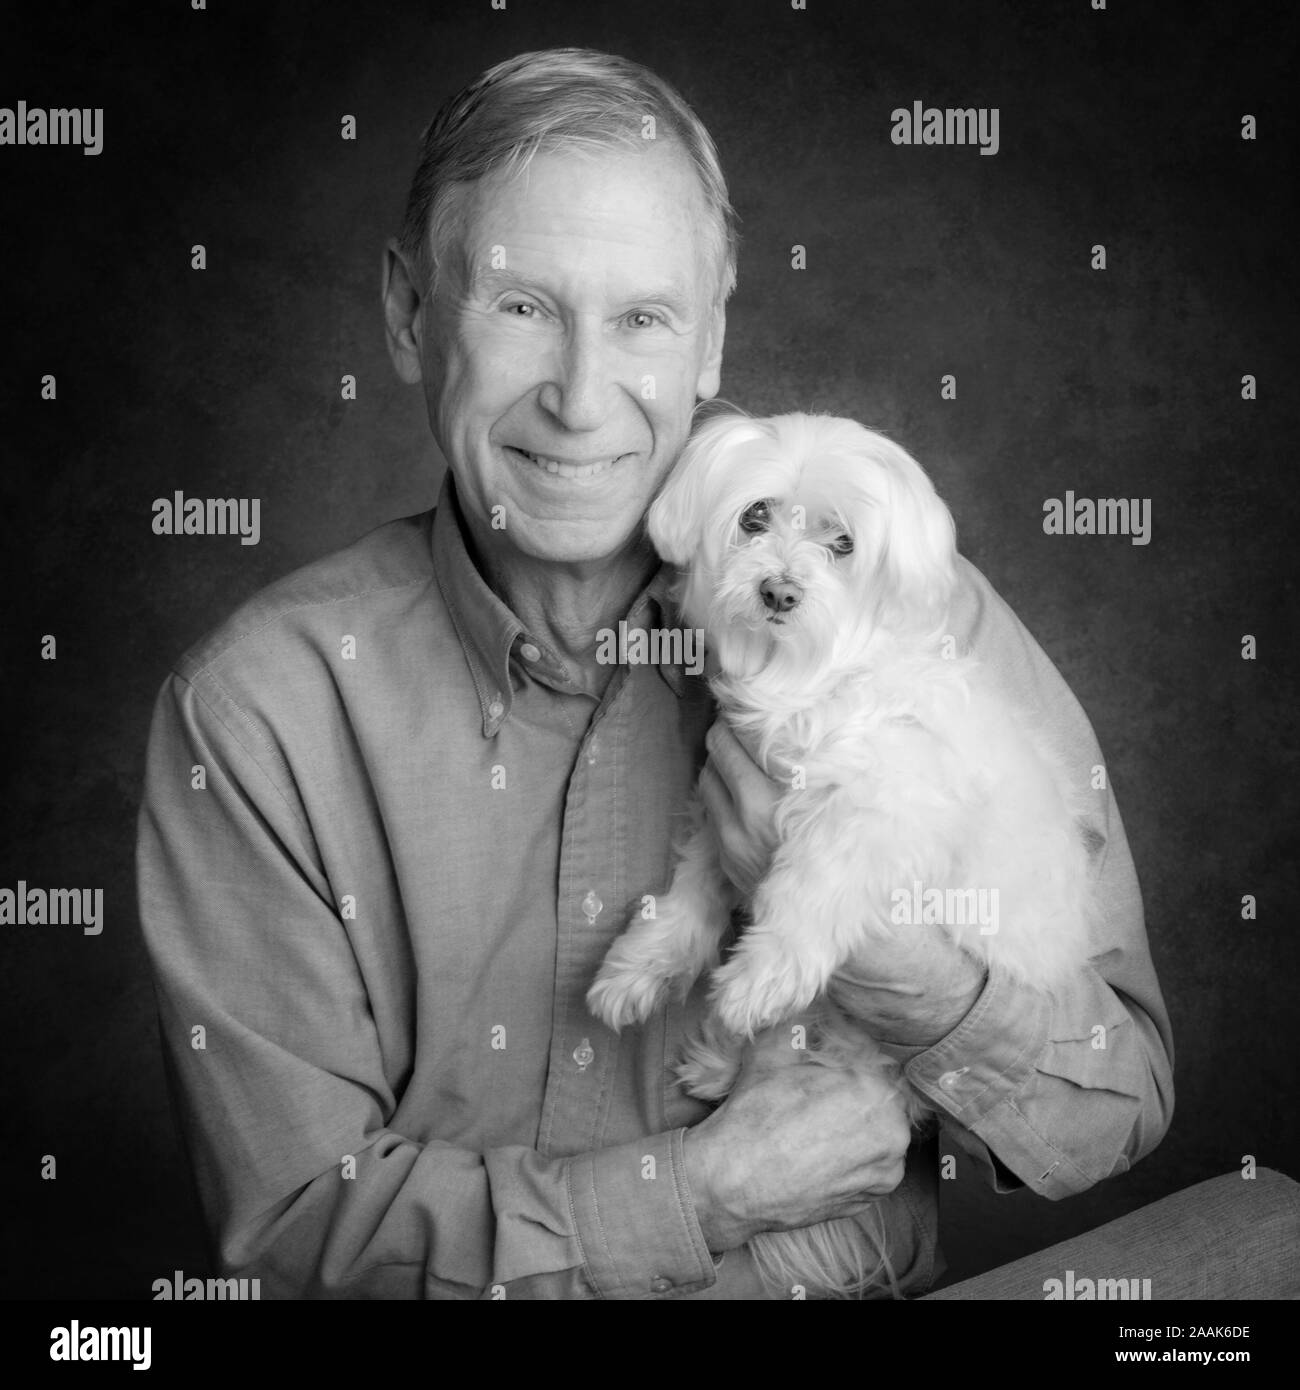 Portrait of senior man holding Maltese Dog Banque D'Images